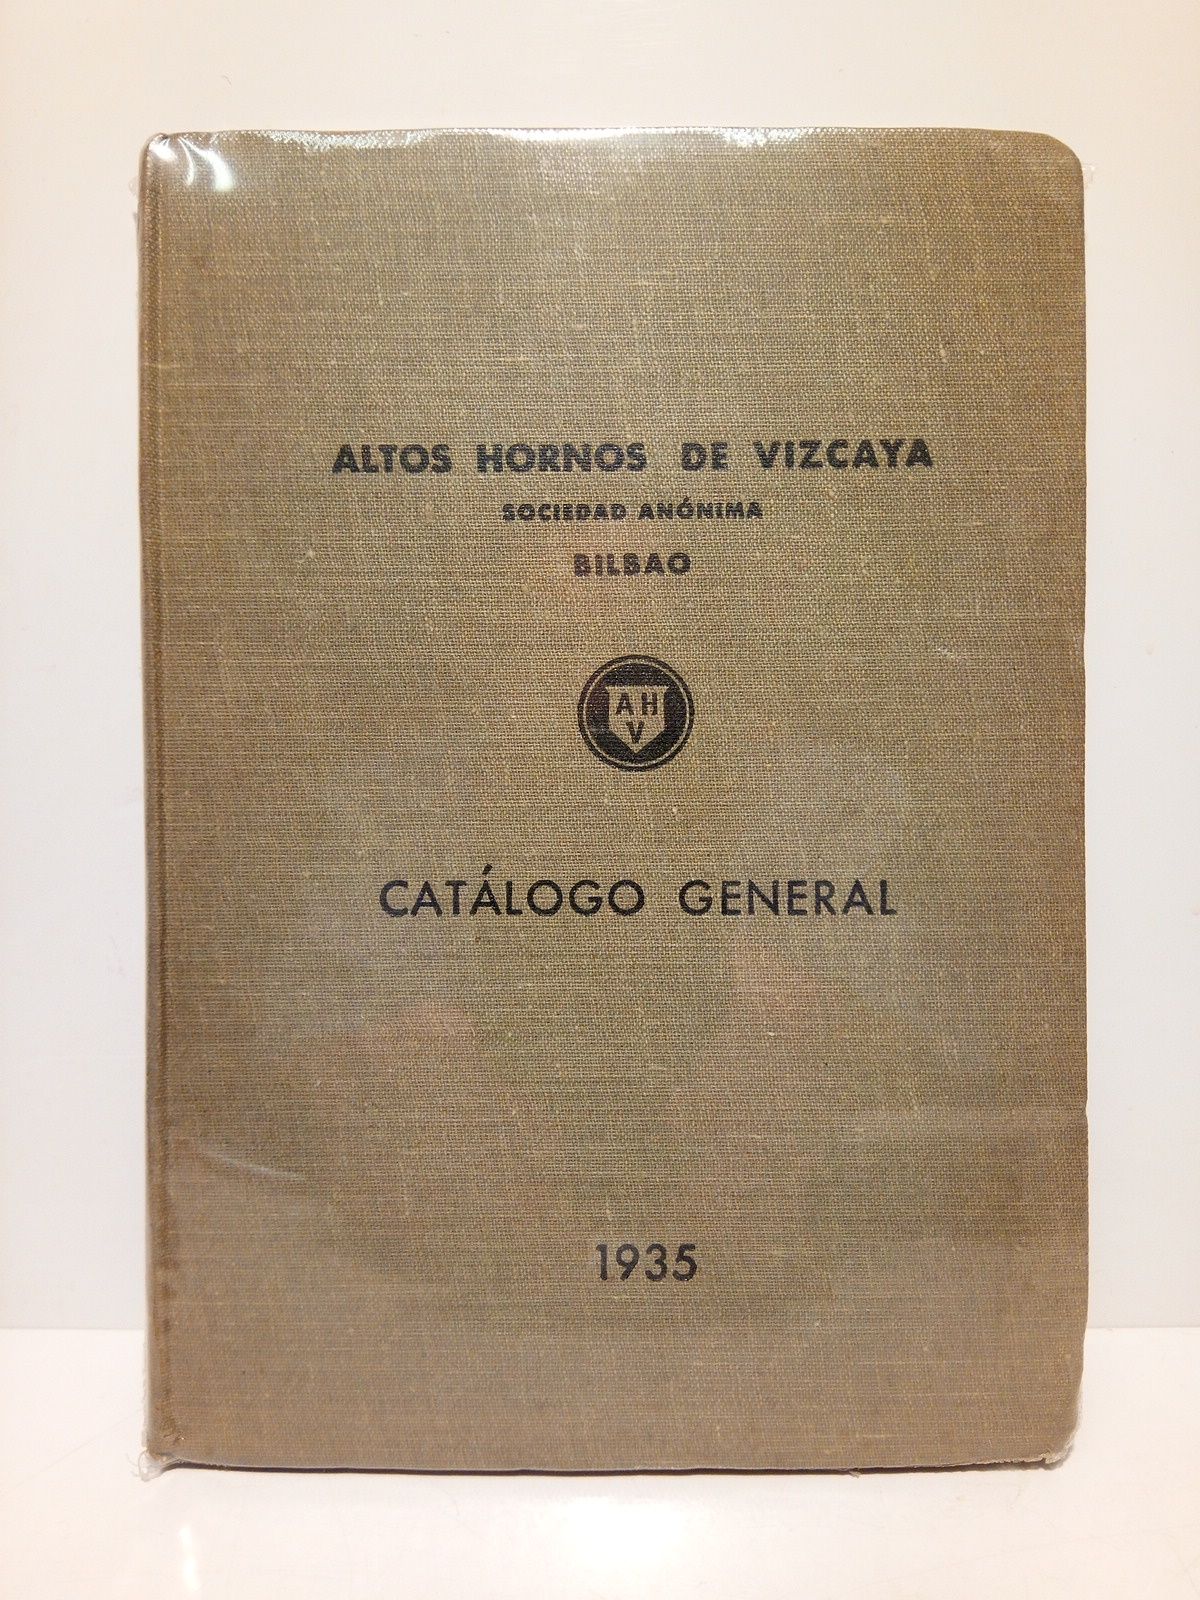 ALTOS HORNOS DE VIZCAYA - Altos Hornos de Vizcaya, Sociedad Annima. Bilbao. Fbricas en Baracaldo y Sestao: CATALOGO GENERAL 1935. (Este Catlogo anula a los anteriores)